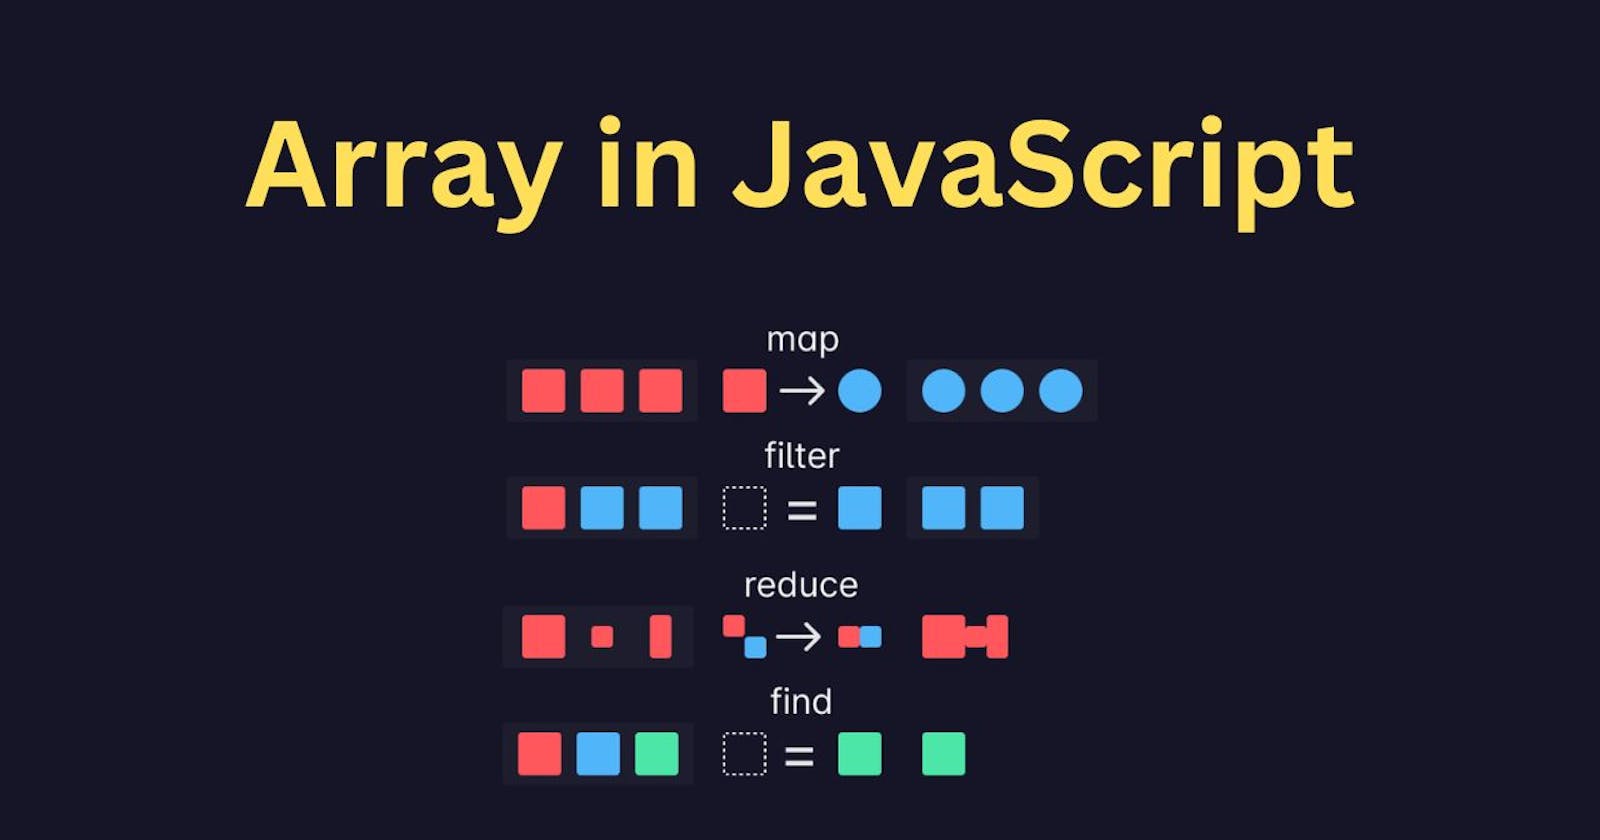 Usage of JavaScript array methods